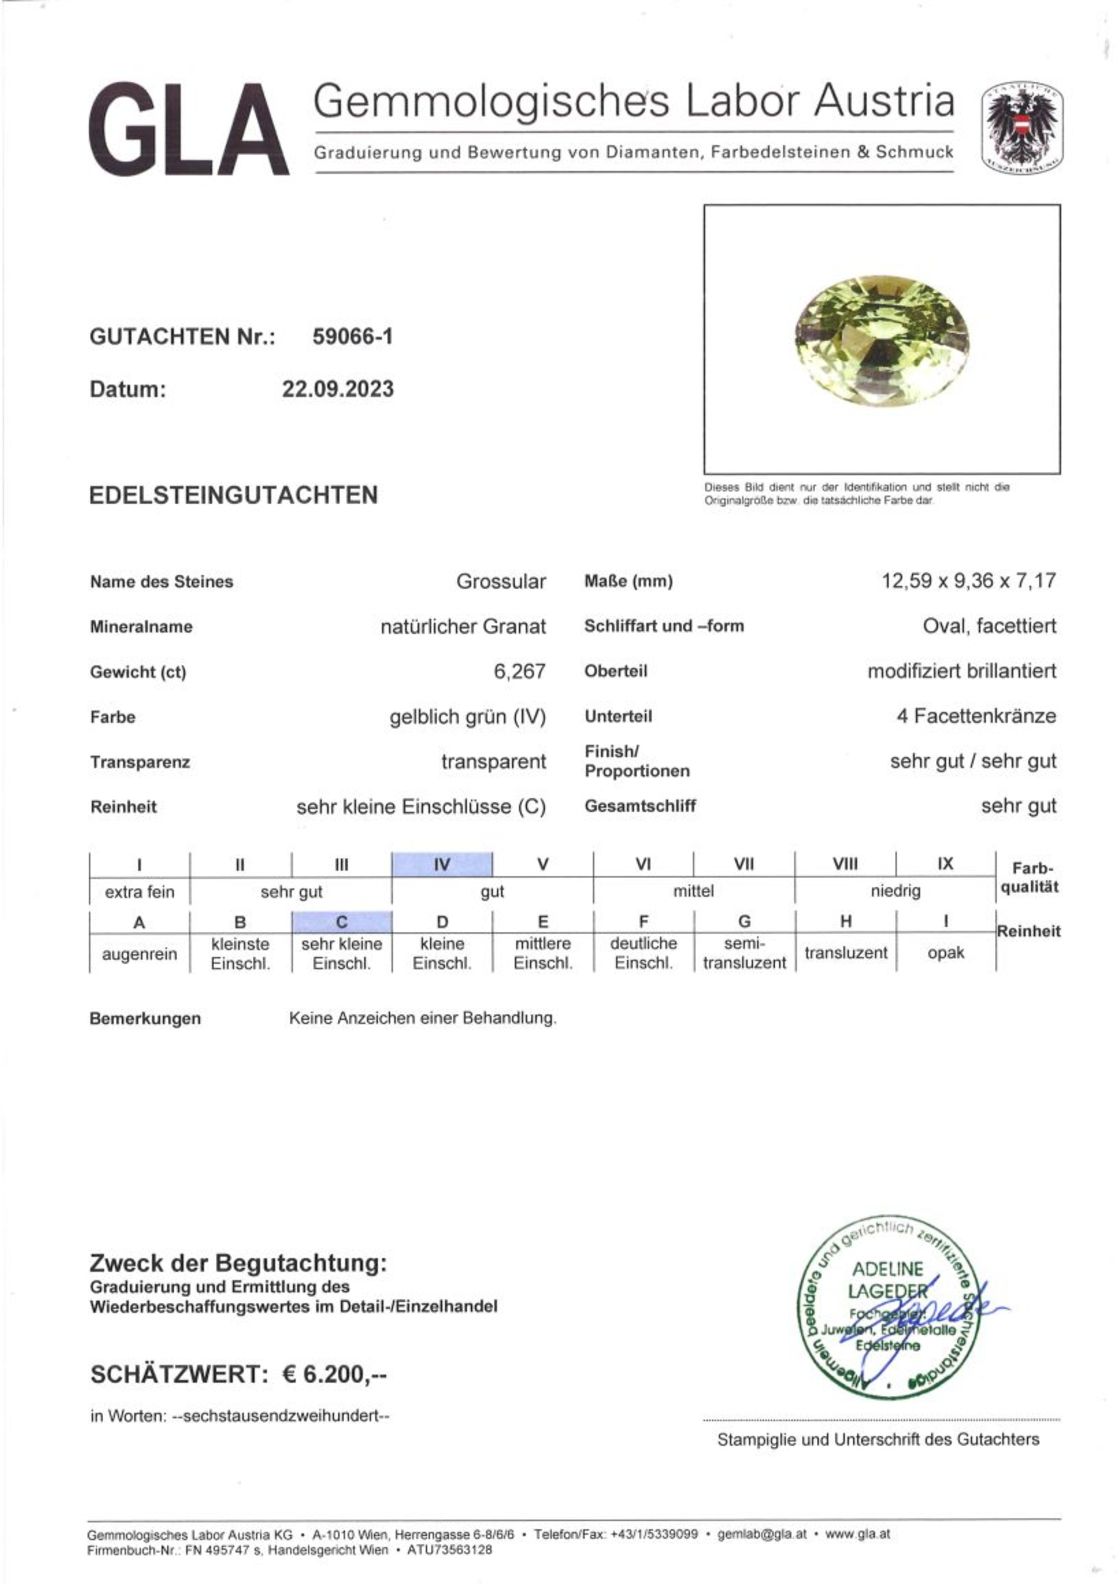 Grossular Granat Ovalschliff gelblich grün 6,267 ct